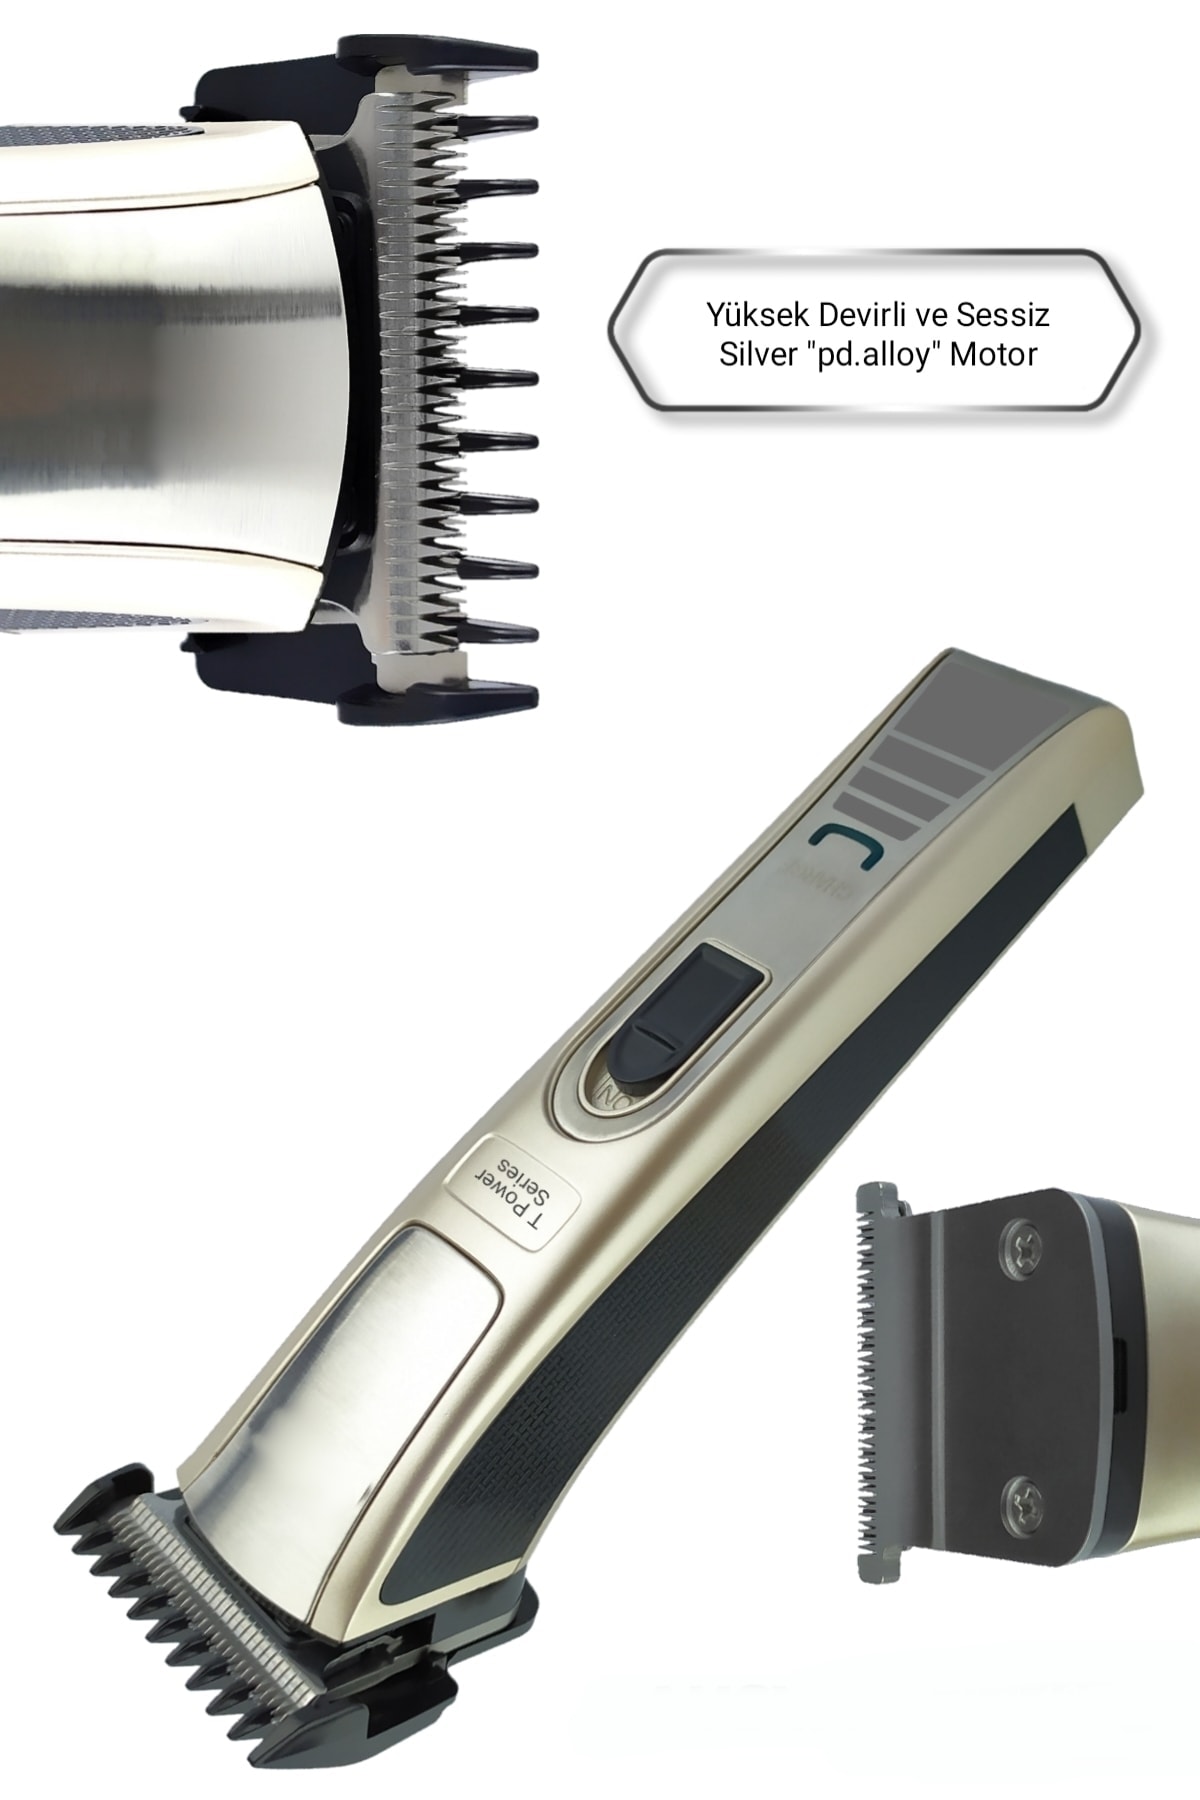 yopigo 128 Kuaför Tipi Şarjlı Saç Sakal Kesme Traş Tıraş Makinesi (LAZER EPİLASYON ÖNCESİ UYGUN BAY-BAYAN) FV11402